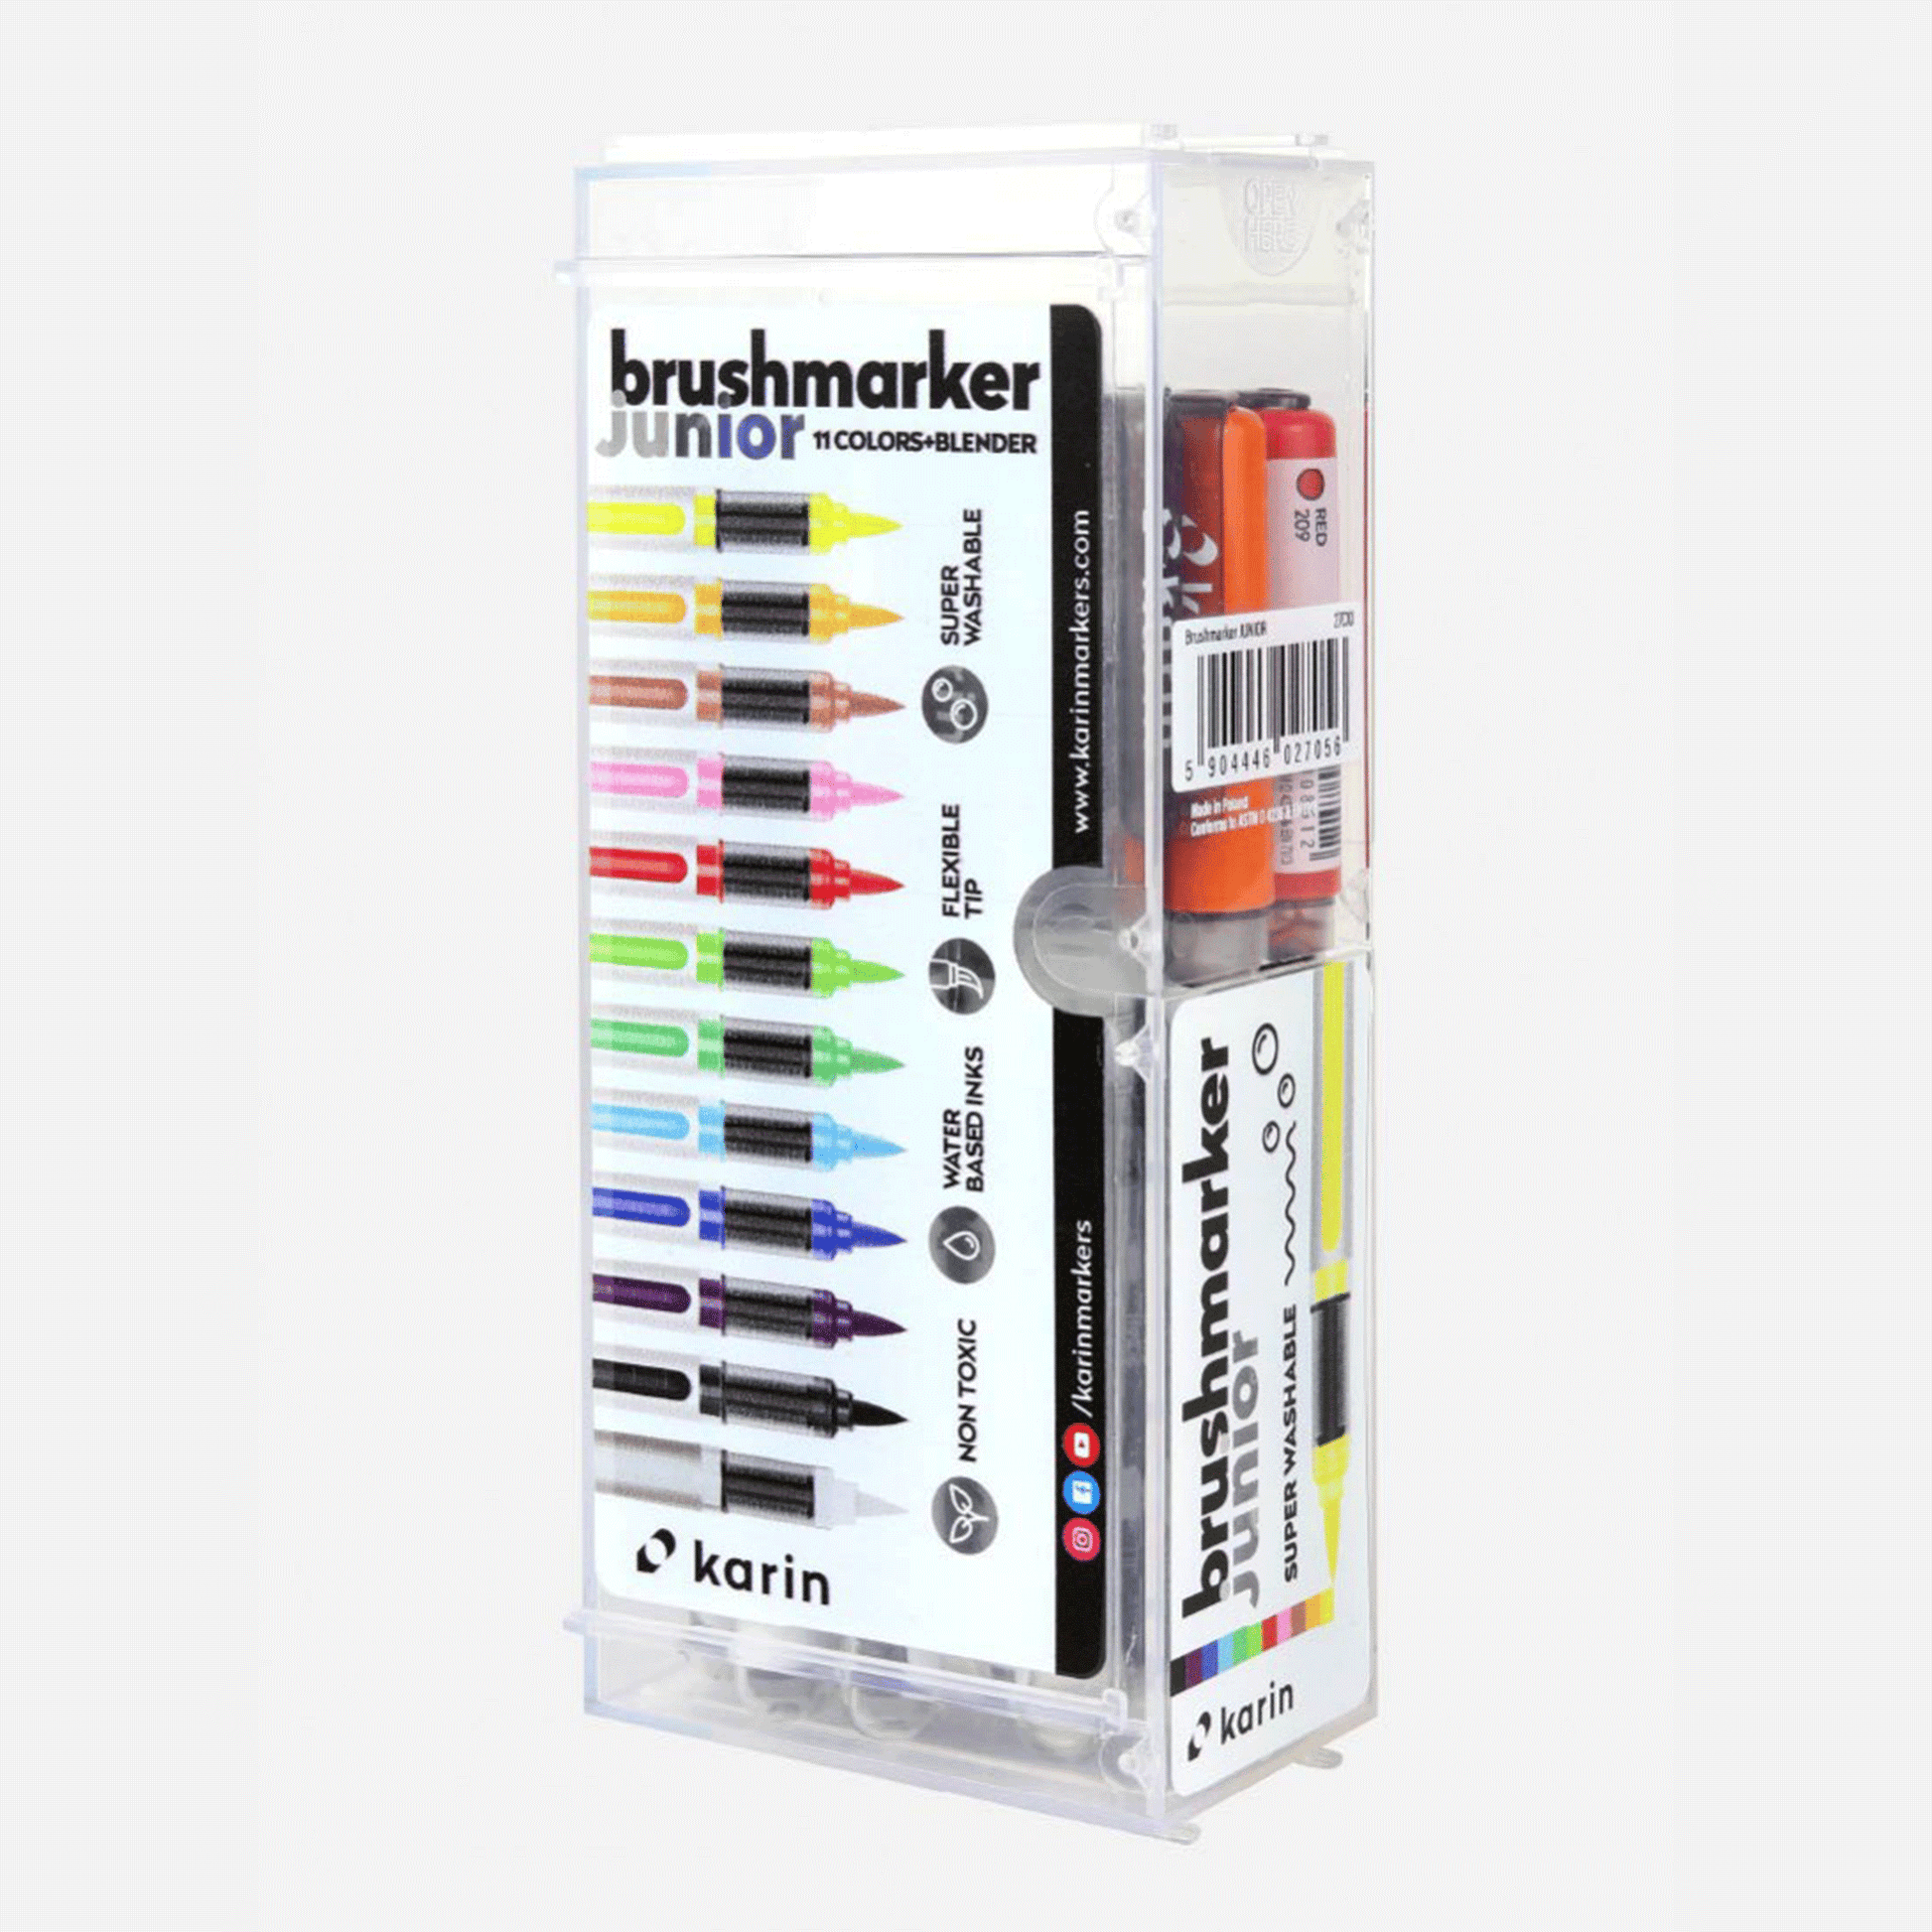 Karin Brushmarker PRO Junior 12pc 11 Basic colors + blender Set